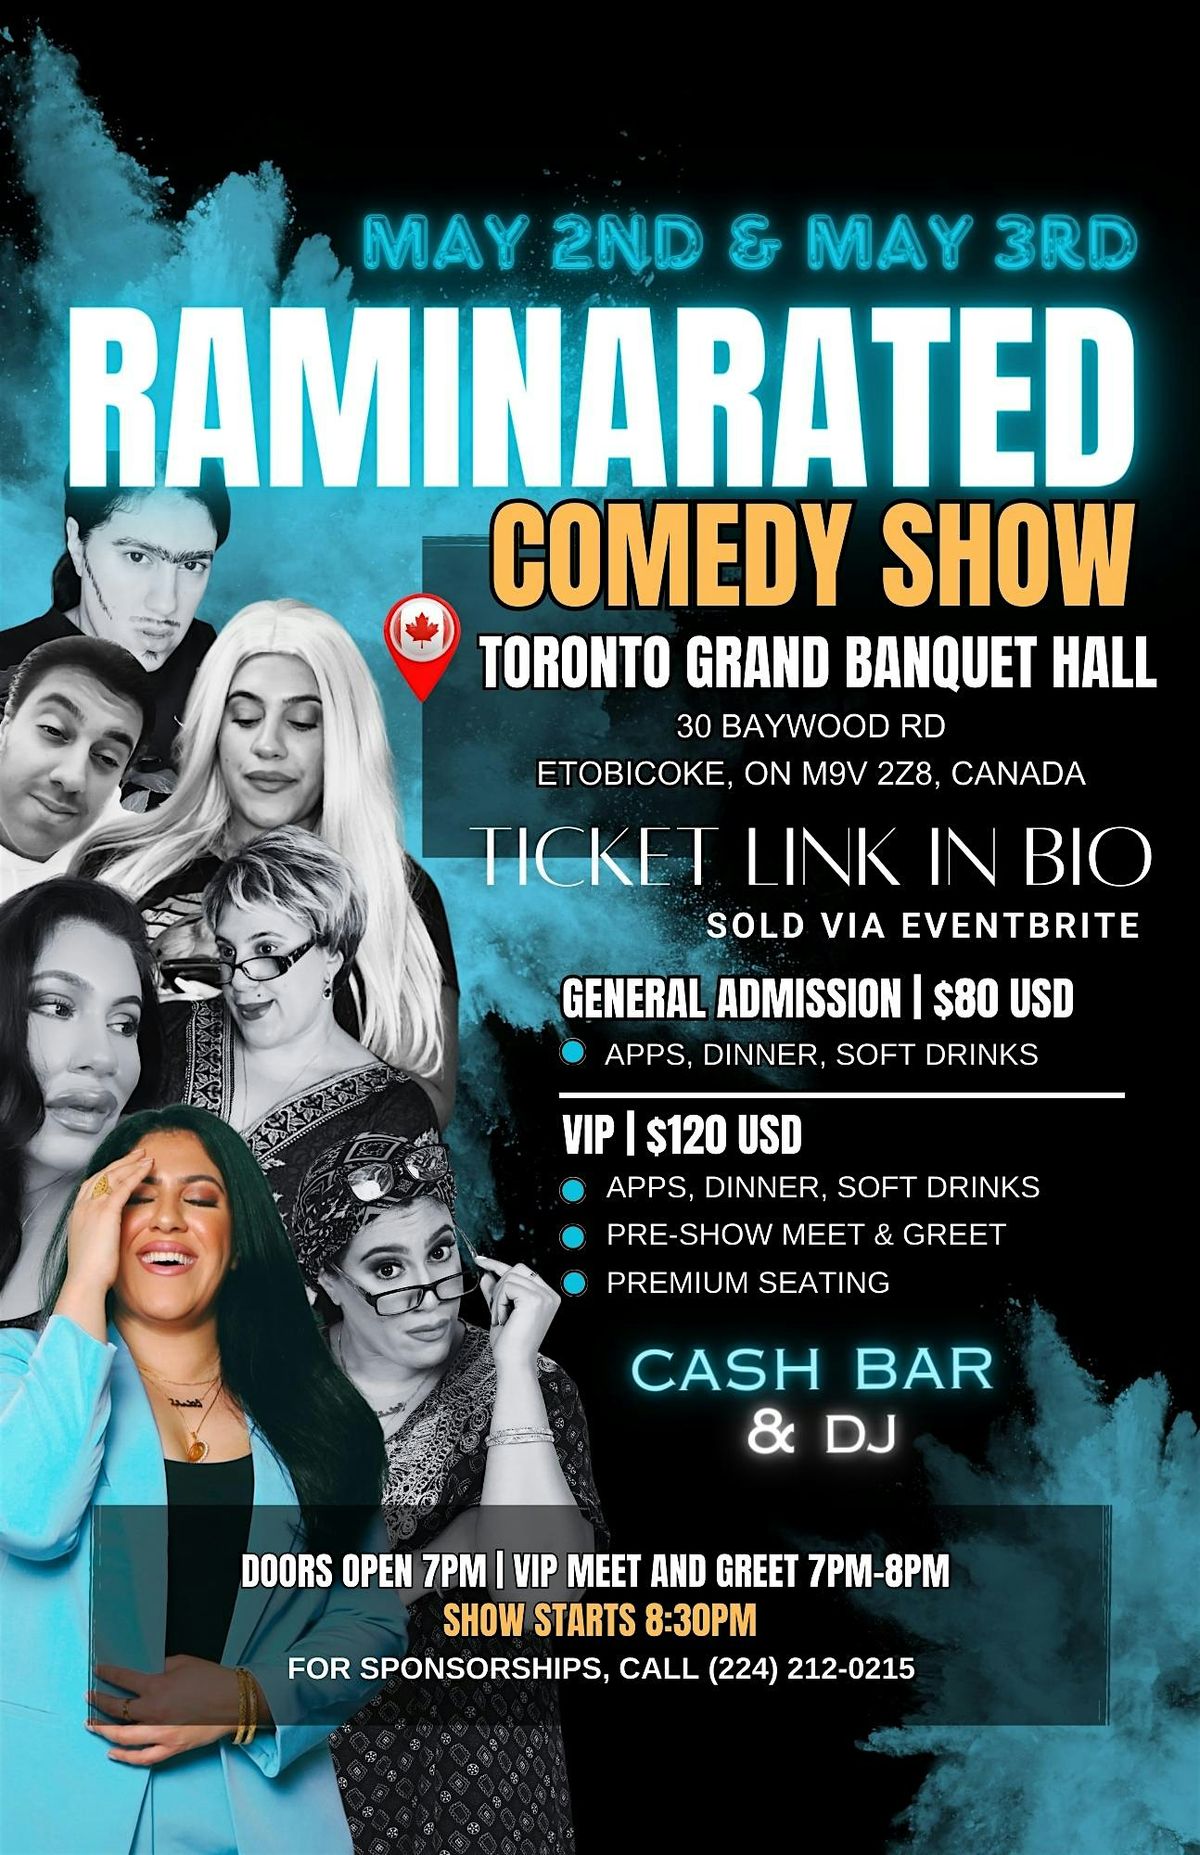 Ramina Rated Comedy Show: Toronto 2024 FRIDAY